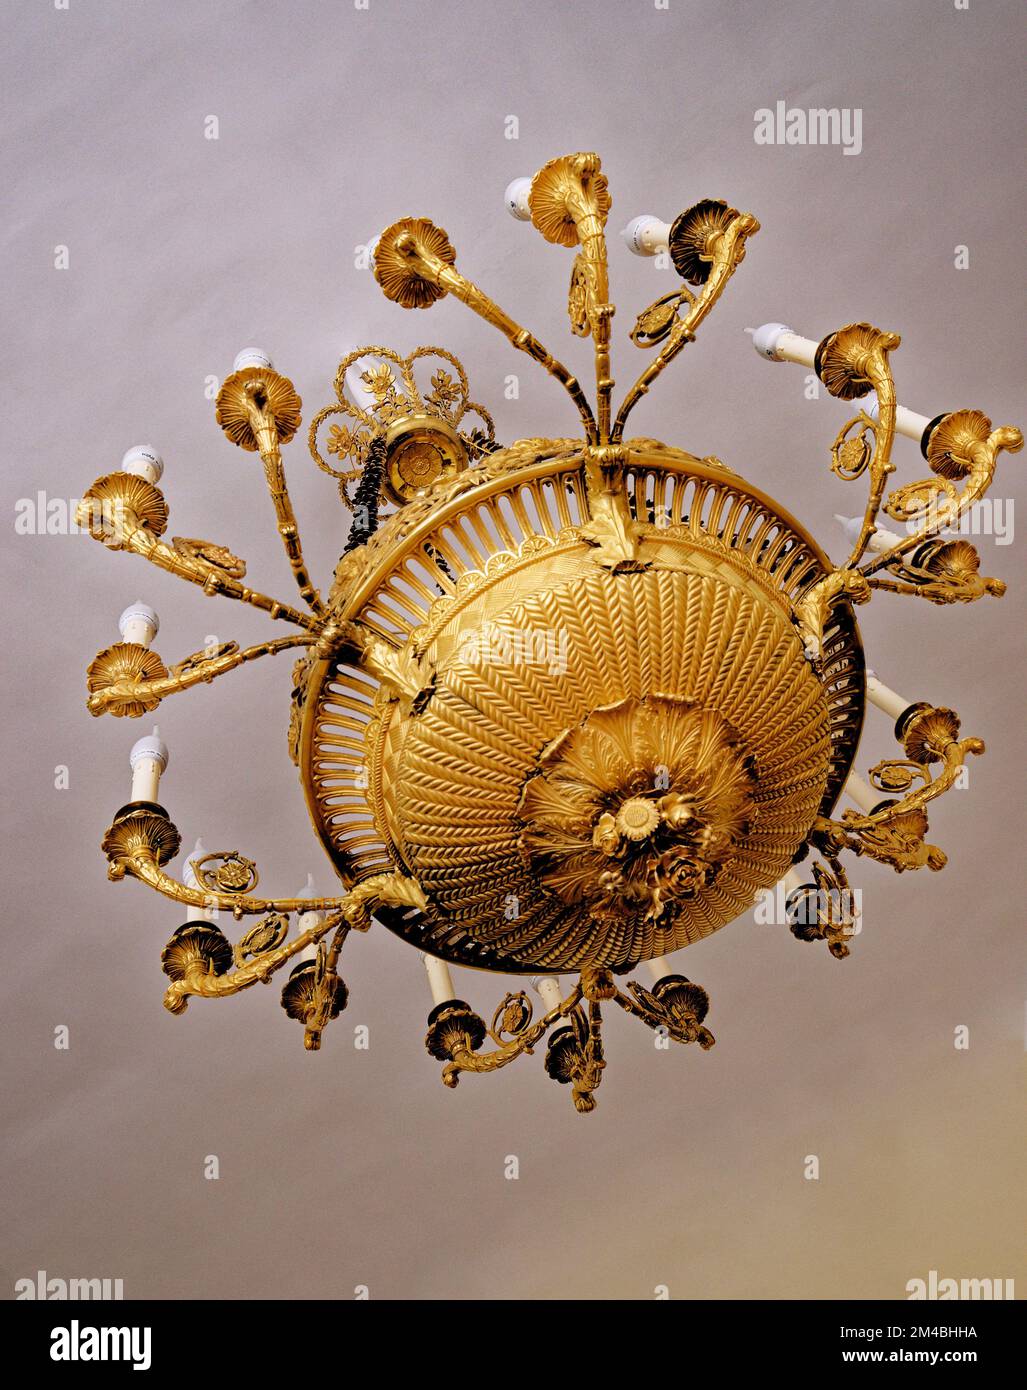 Candélabre doré à l'intérieur du Palais Catherine - Tsarskoye Selo (Pouchkine), St. Petersbourg, Russie. 24th de juin 2011 Banque D'Images